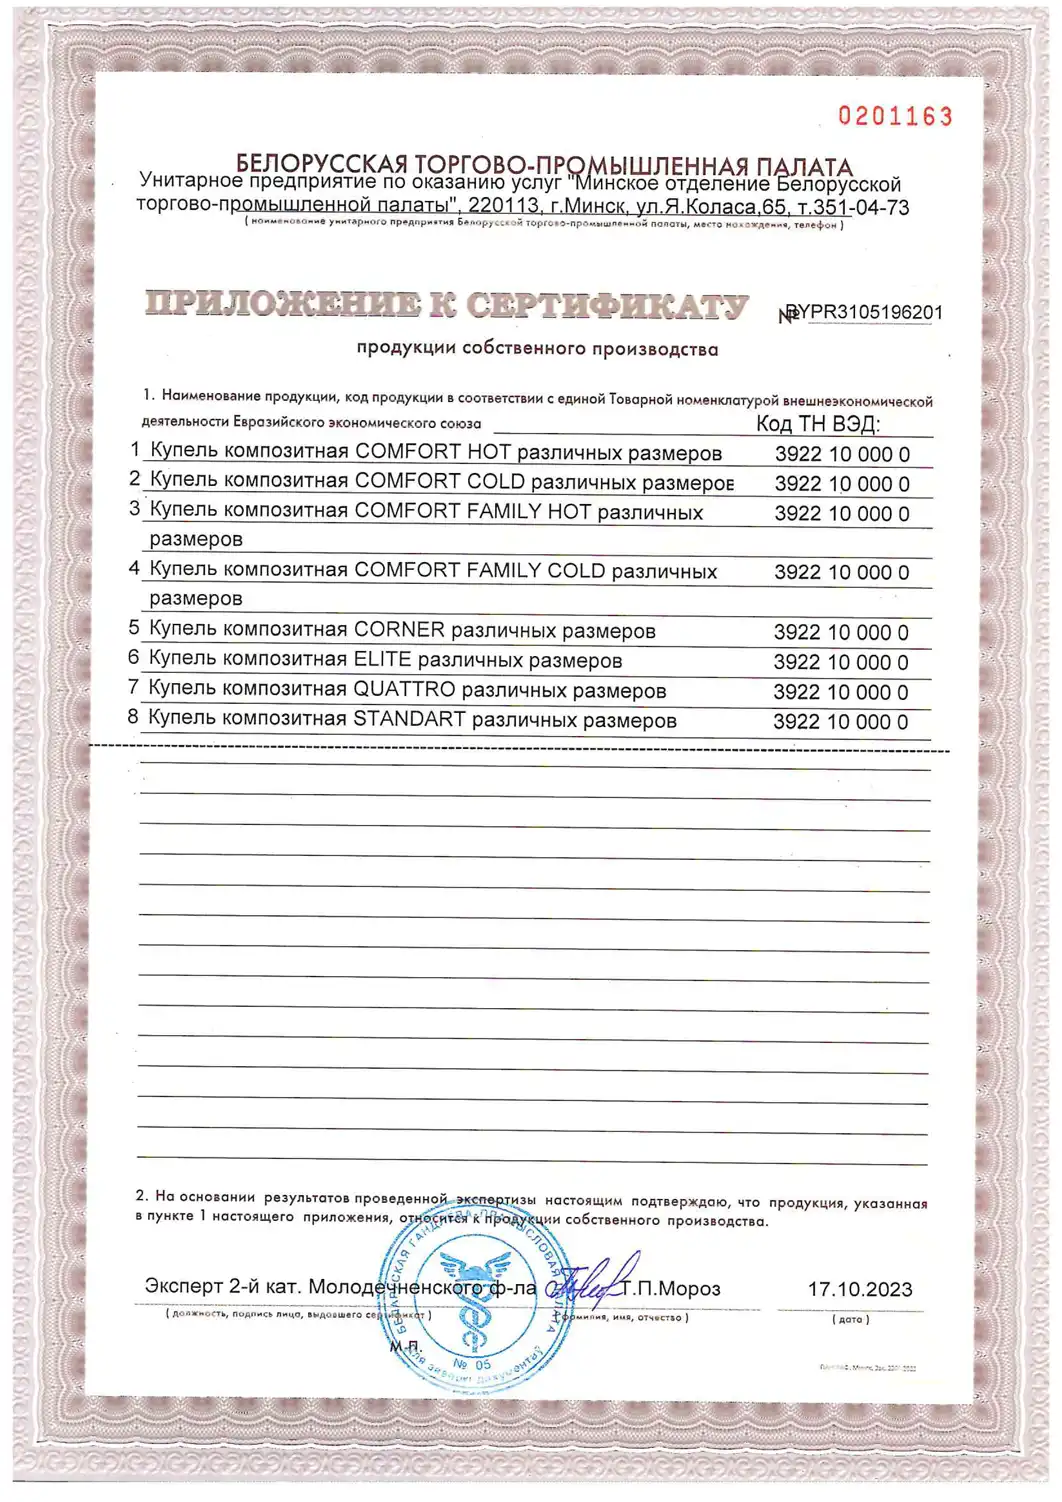 Сертификат собственного производства на купели POLARSPA - часть 2